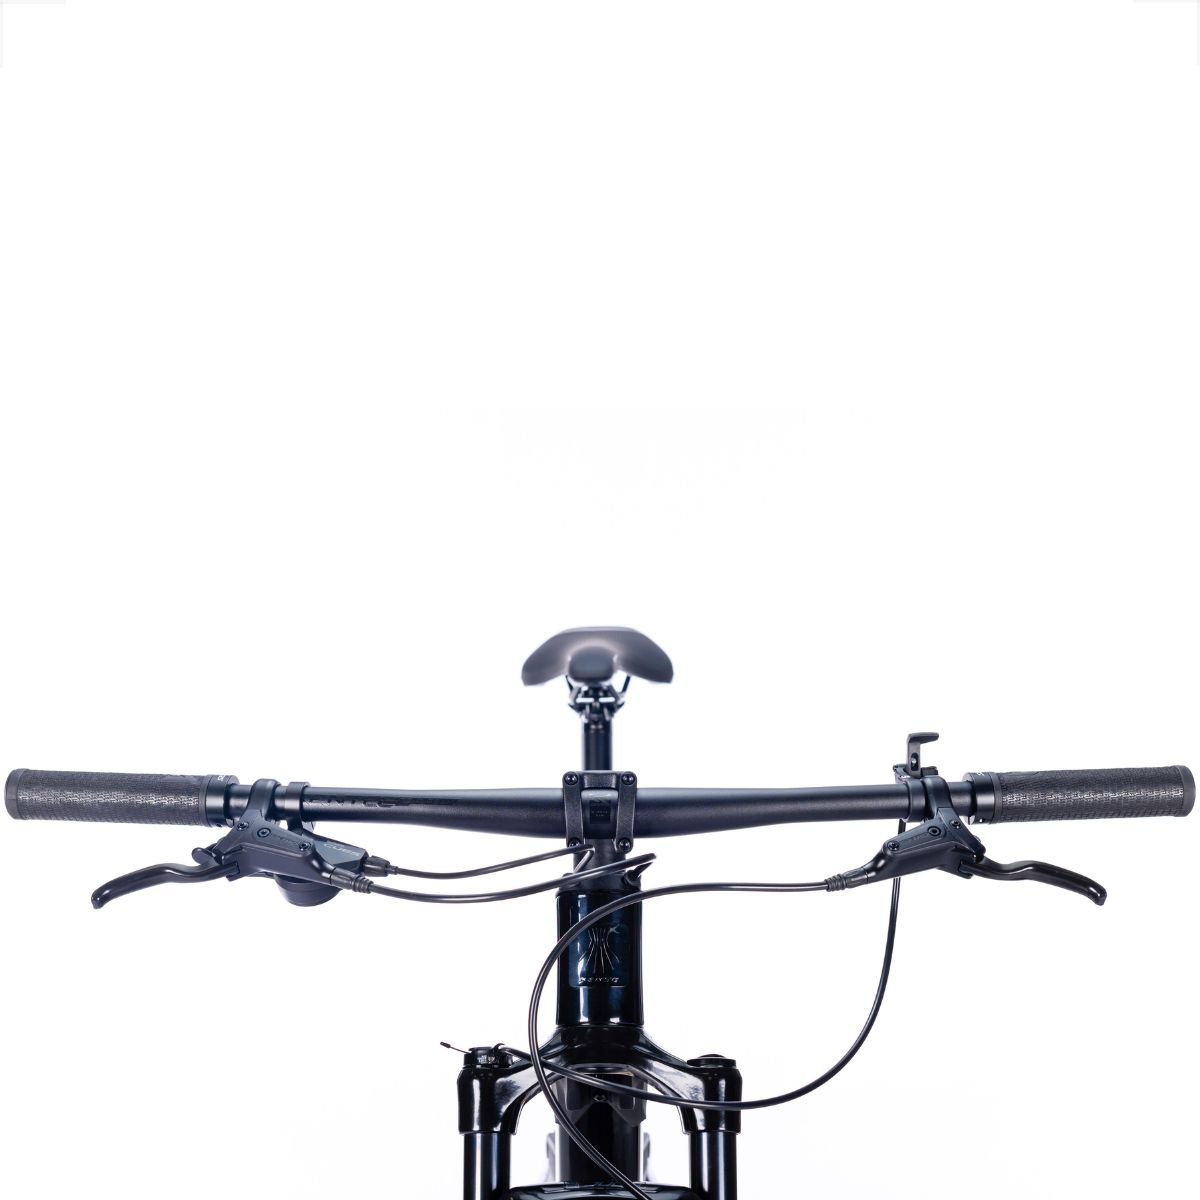 Bicicleta Full Sense Invictus Sport Carbono Shimano Cues:roxo+preto/17 - 9